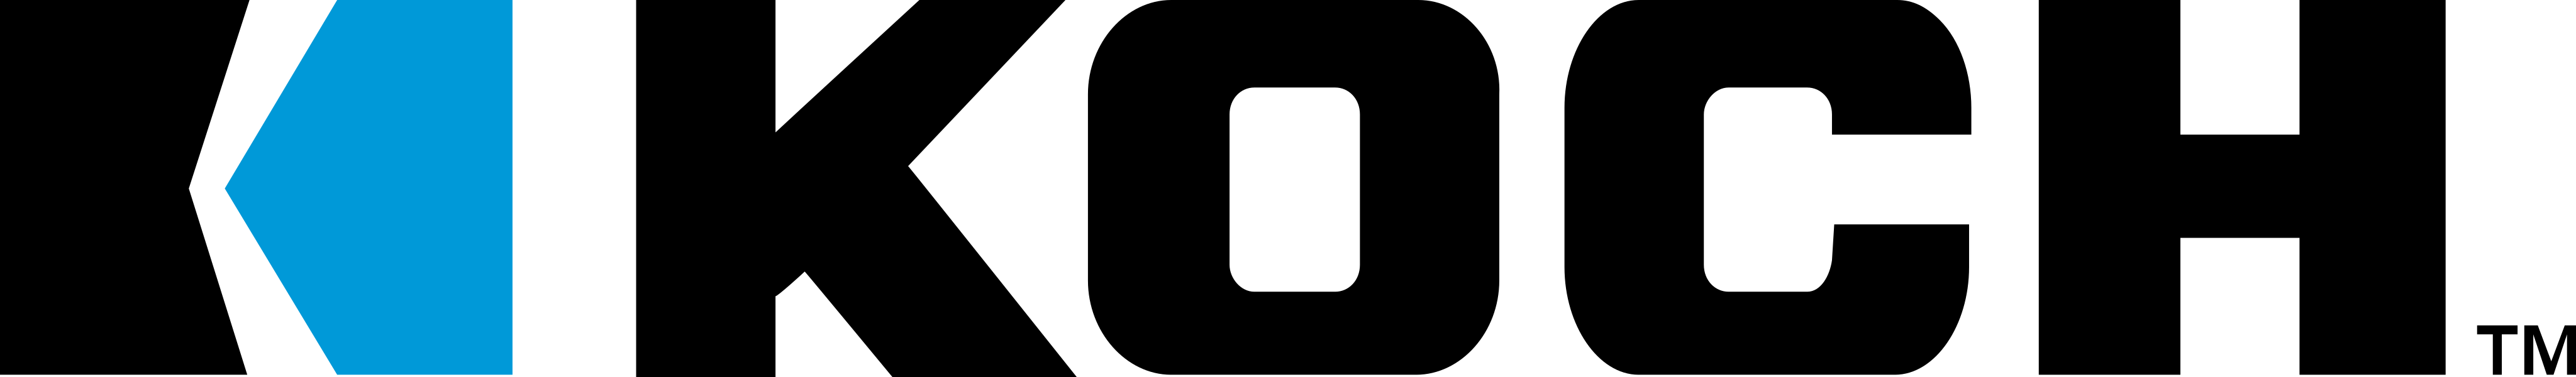 koch logo - Koch Industries Logo